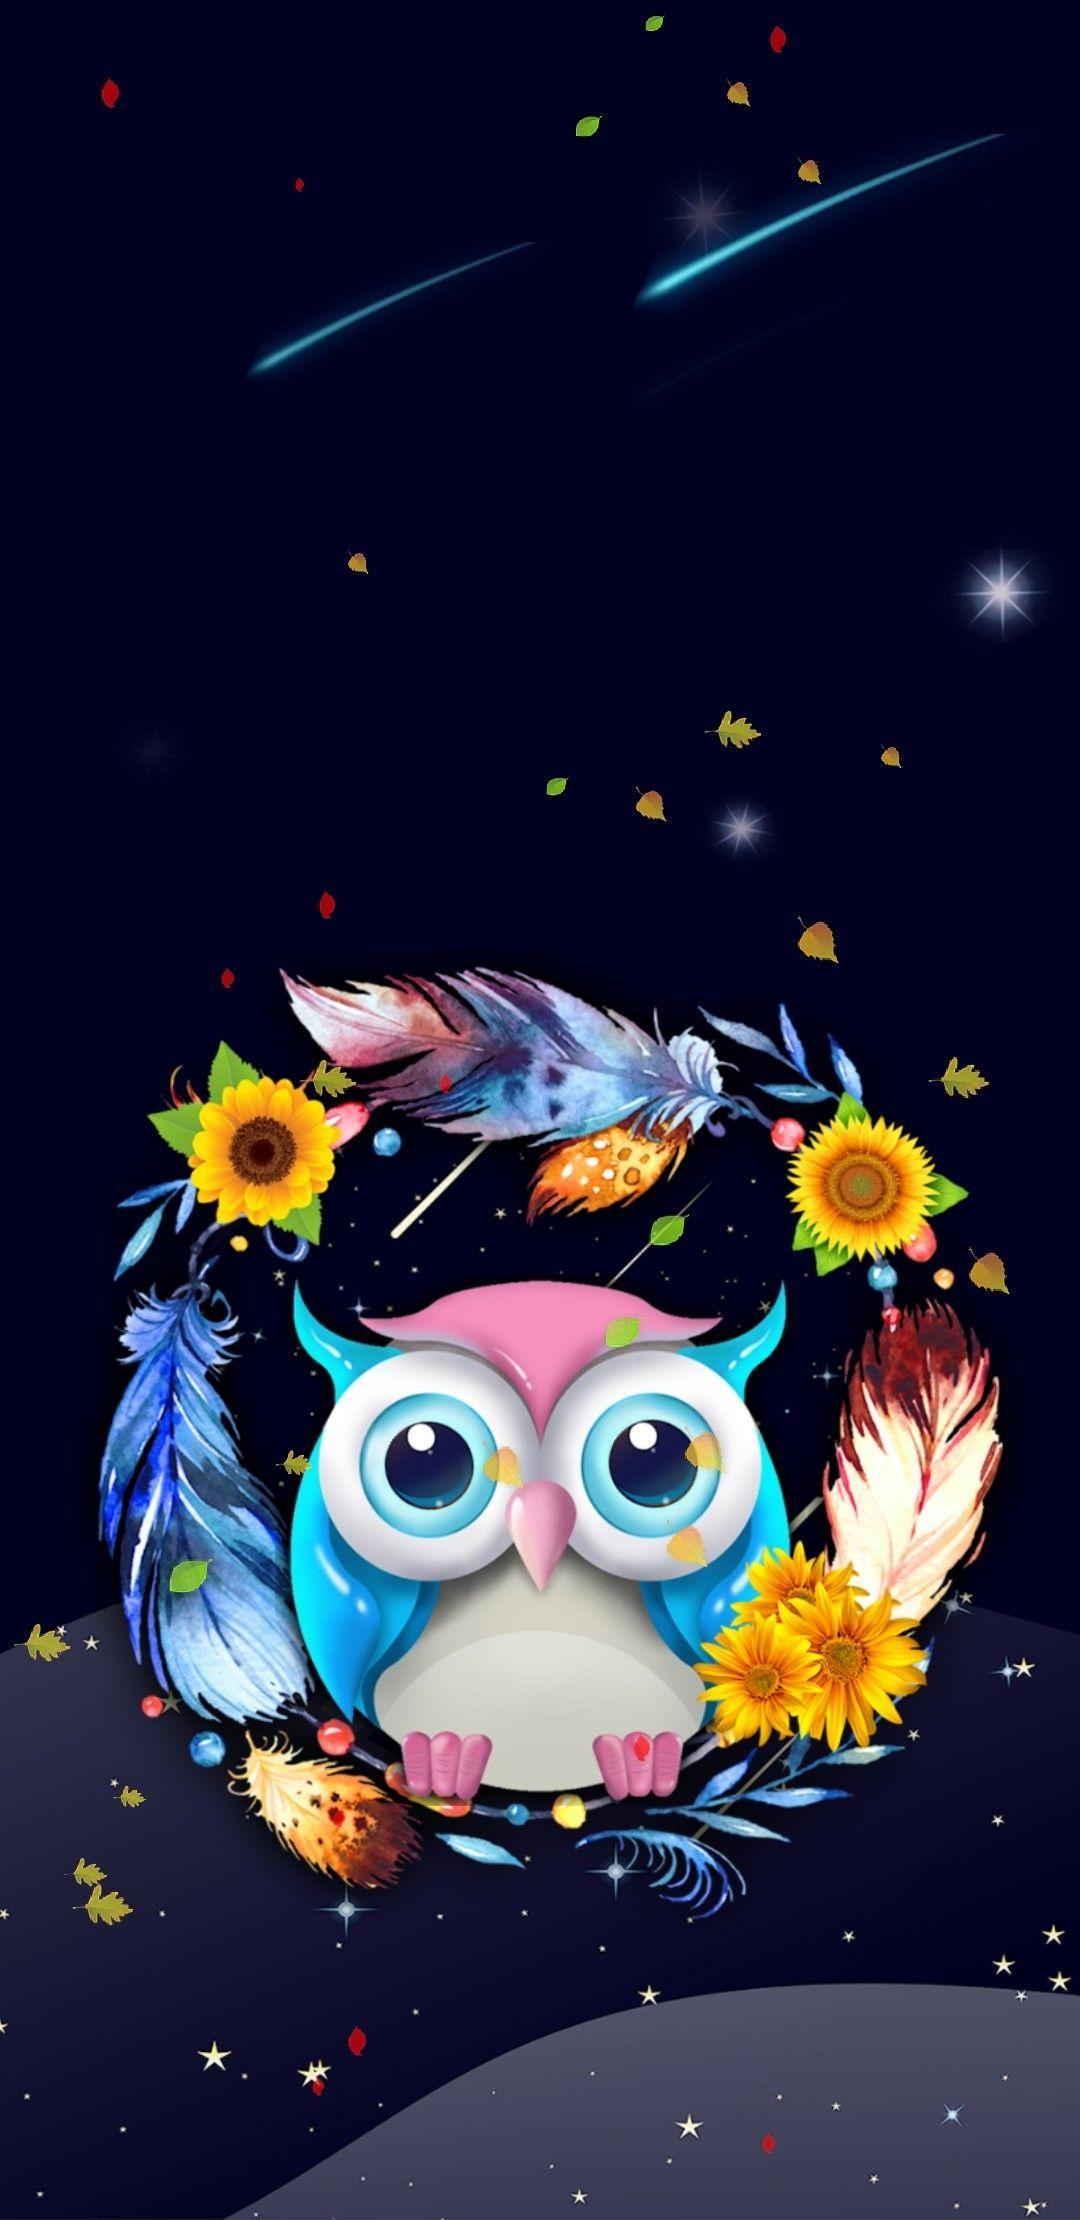 Top 25 Best Owl iPhone Wallpapers Download